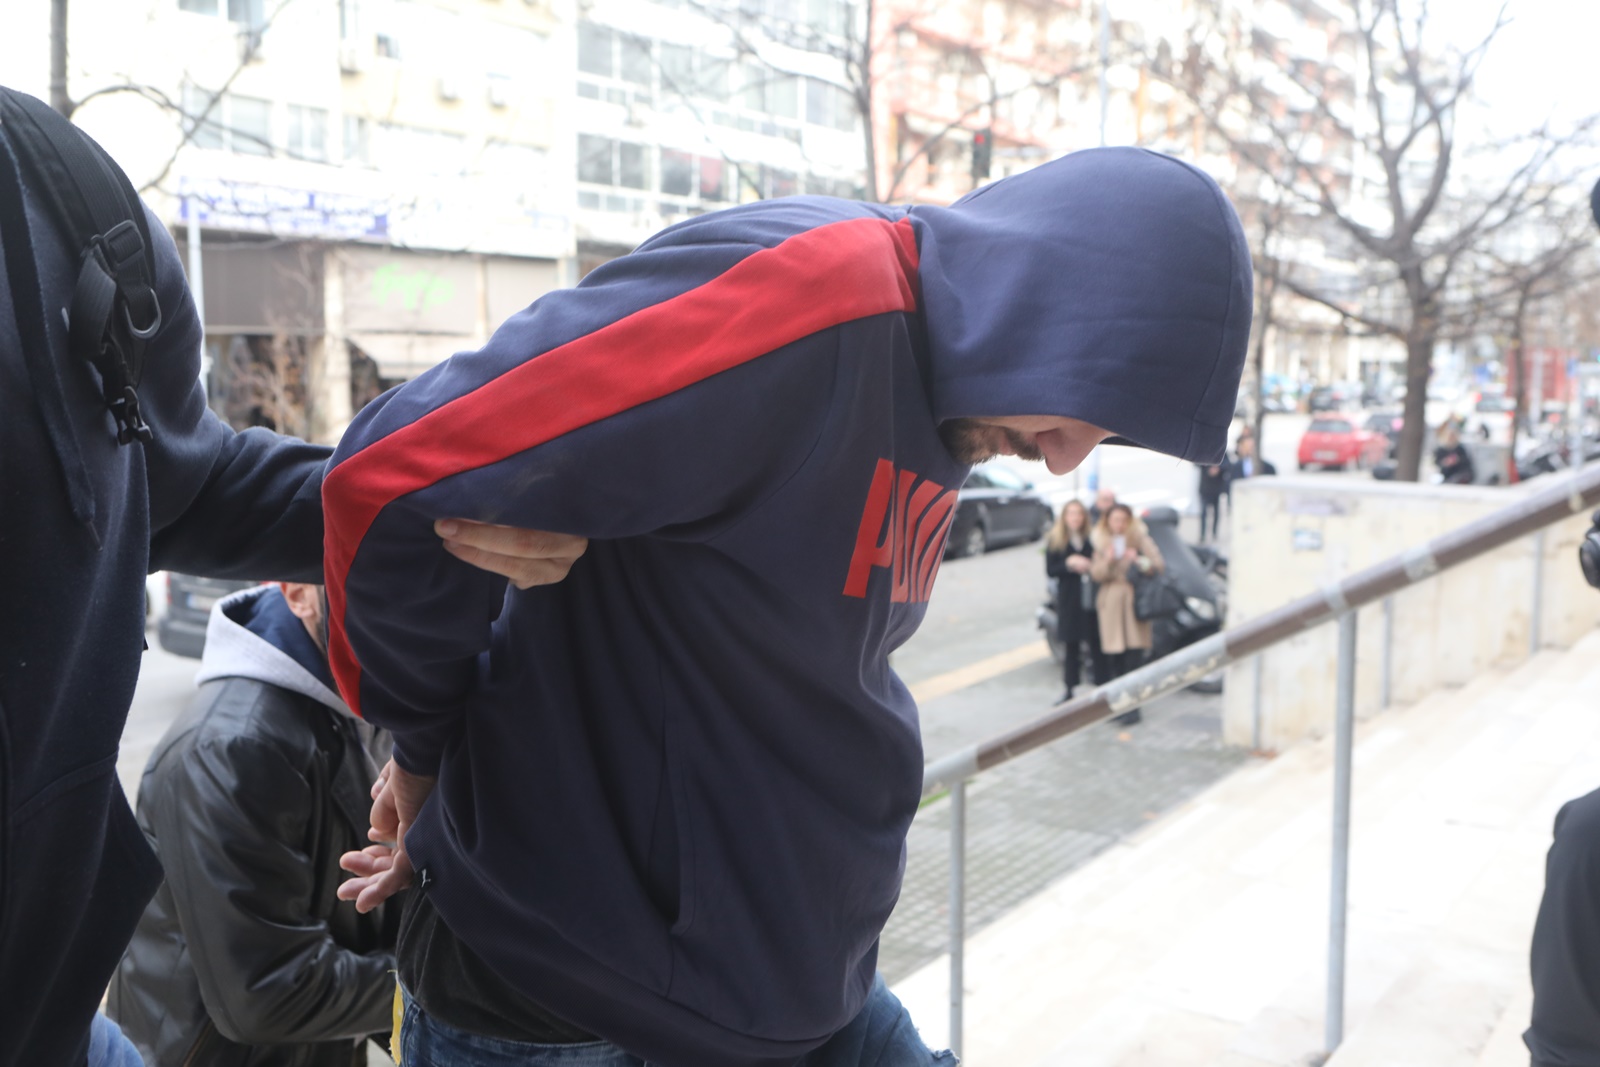 Σύντροφος 41χρονης – Θεσσαλονίκη: Ο 39χρονος κατηγορείται και για βιασμό της αδερφής του